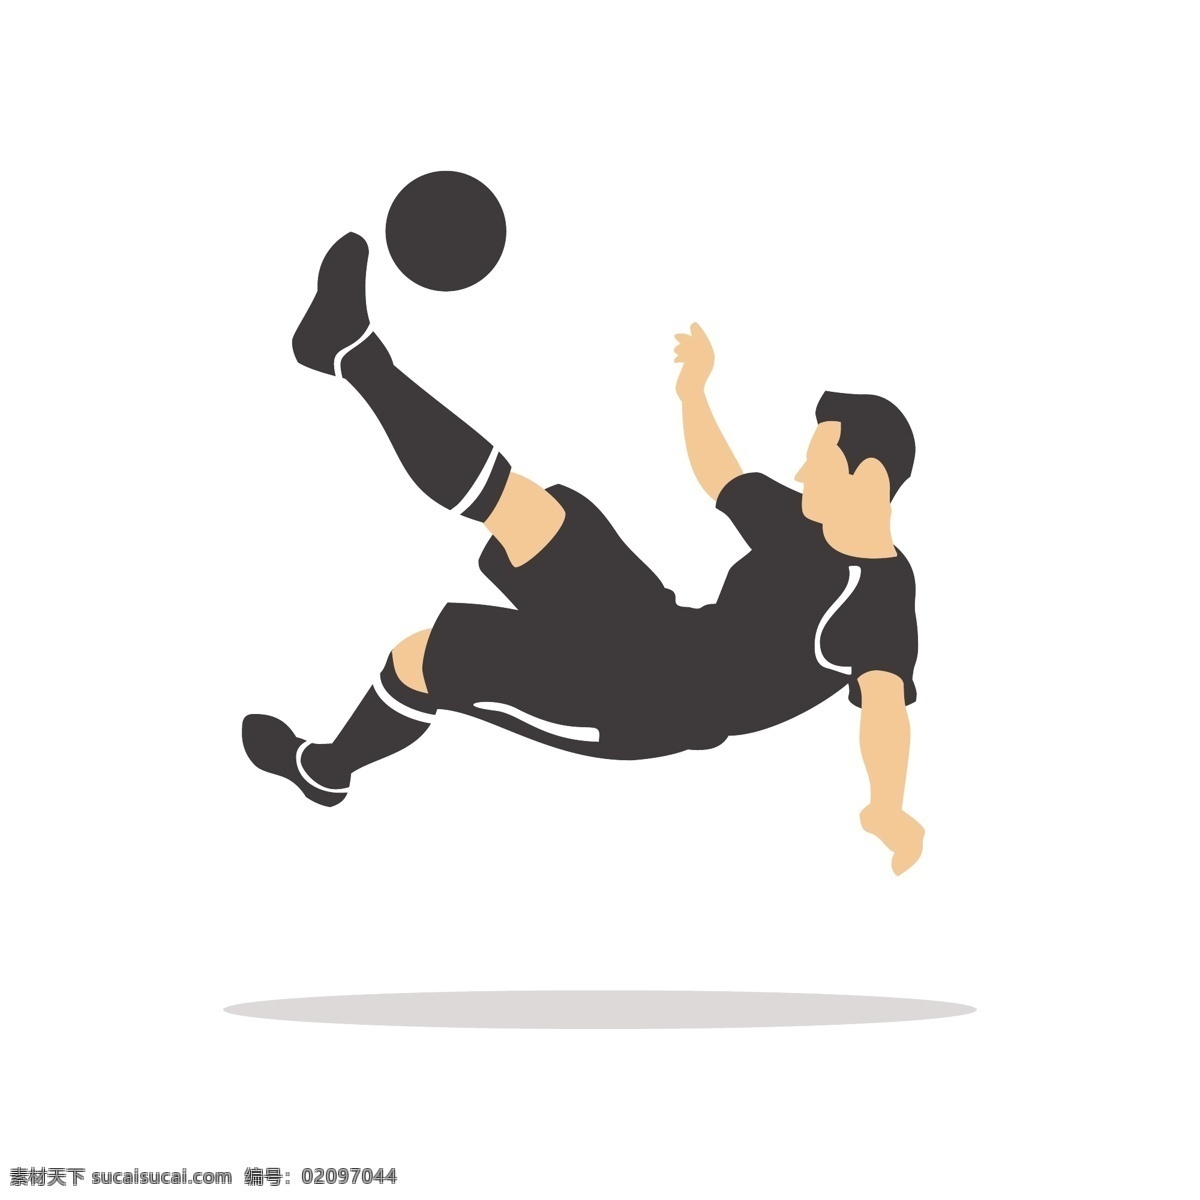 支撑 地面 传球 矢量 足球 足球运动 踢足球 姿势 踢球姿势 运动姿势 体育 体育运动 踢球动作 动作姿势